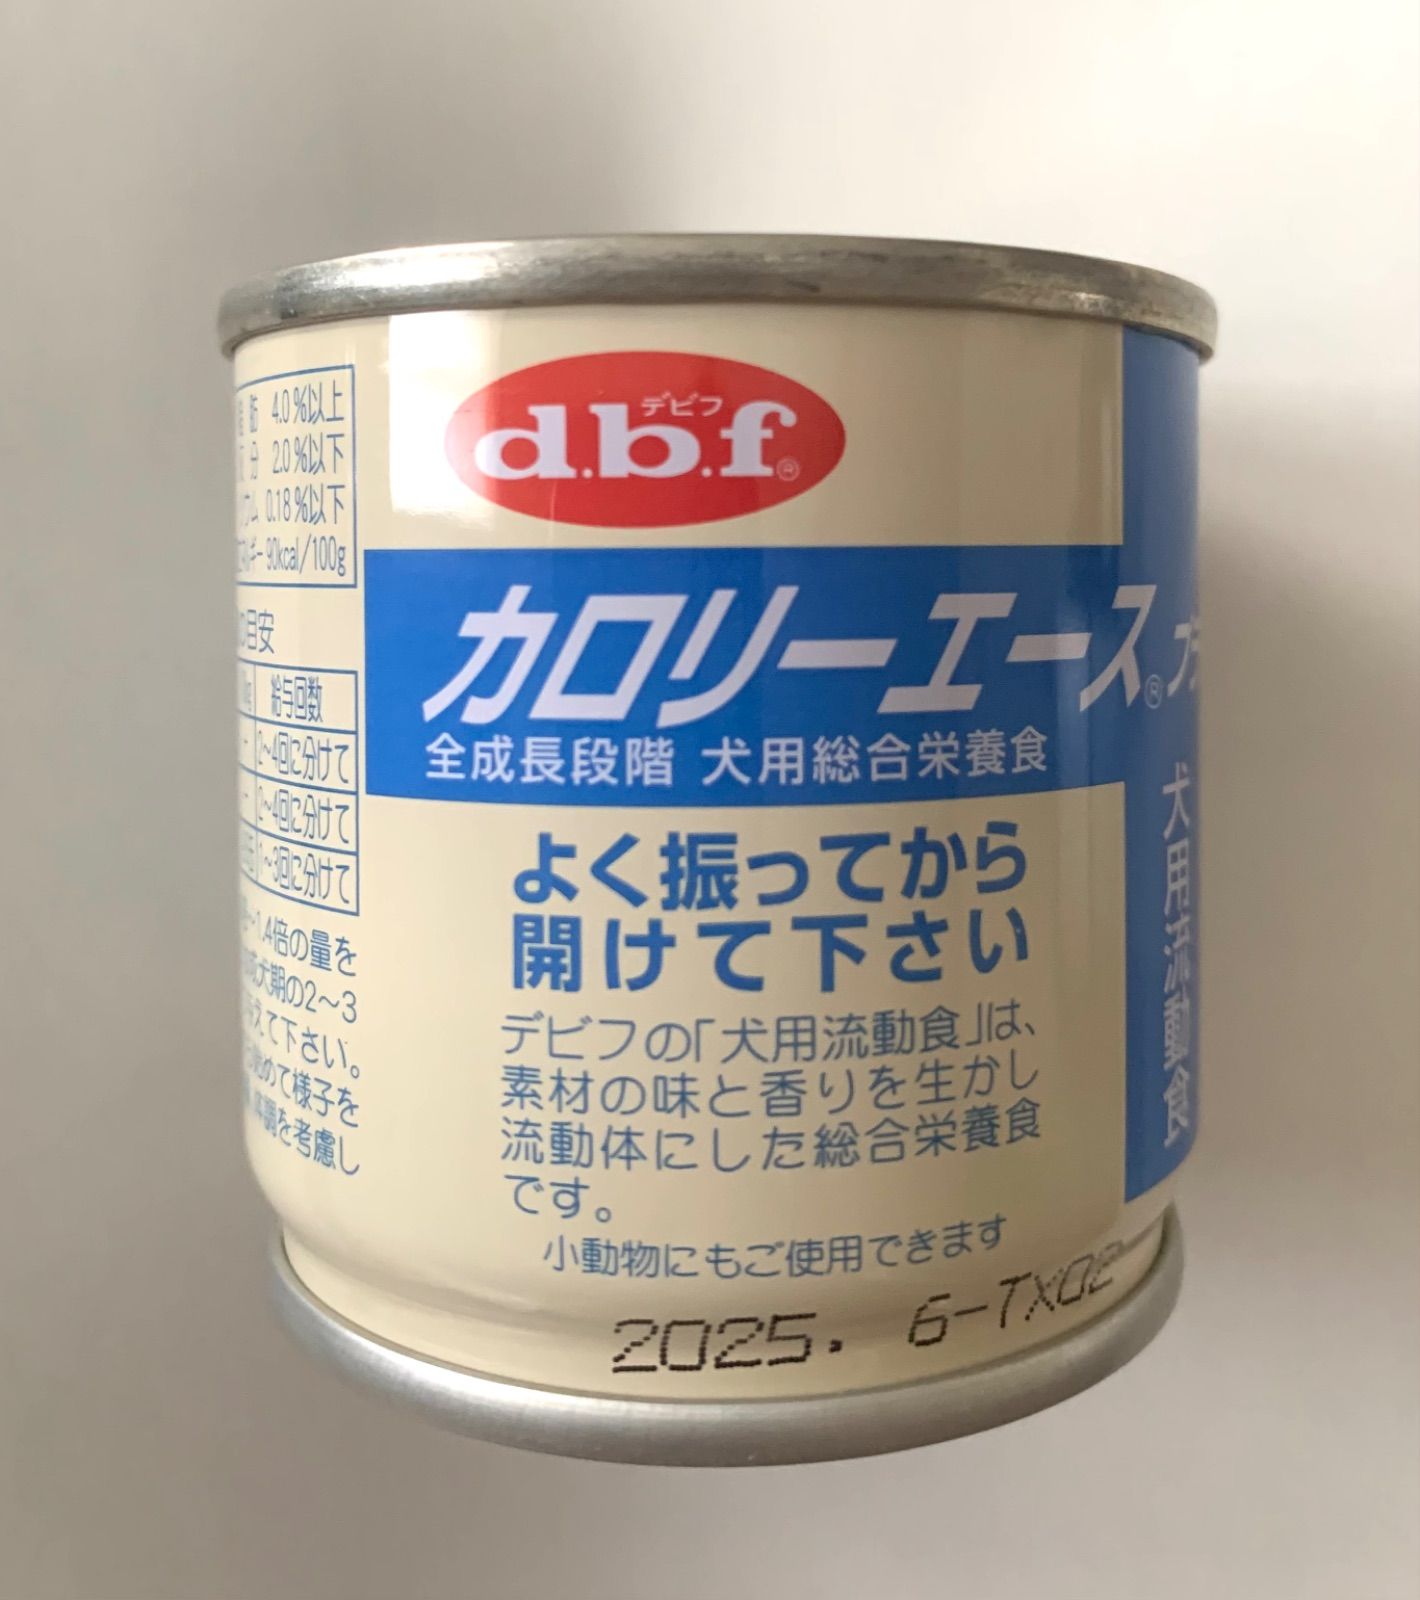 デビフペット カロリーエース プラス 犬用流動食 85g×24缶 - ペットフード